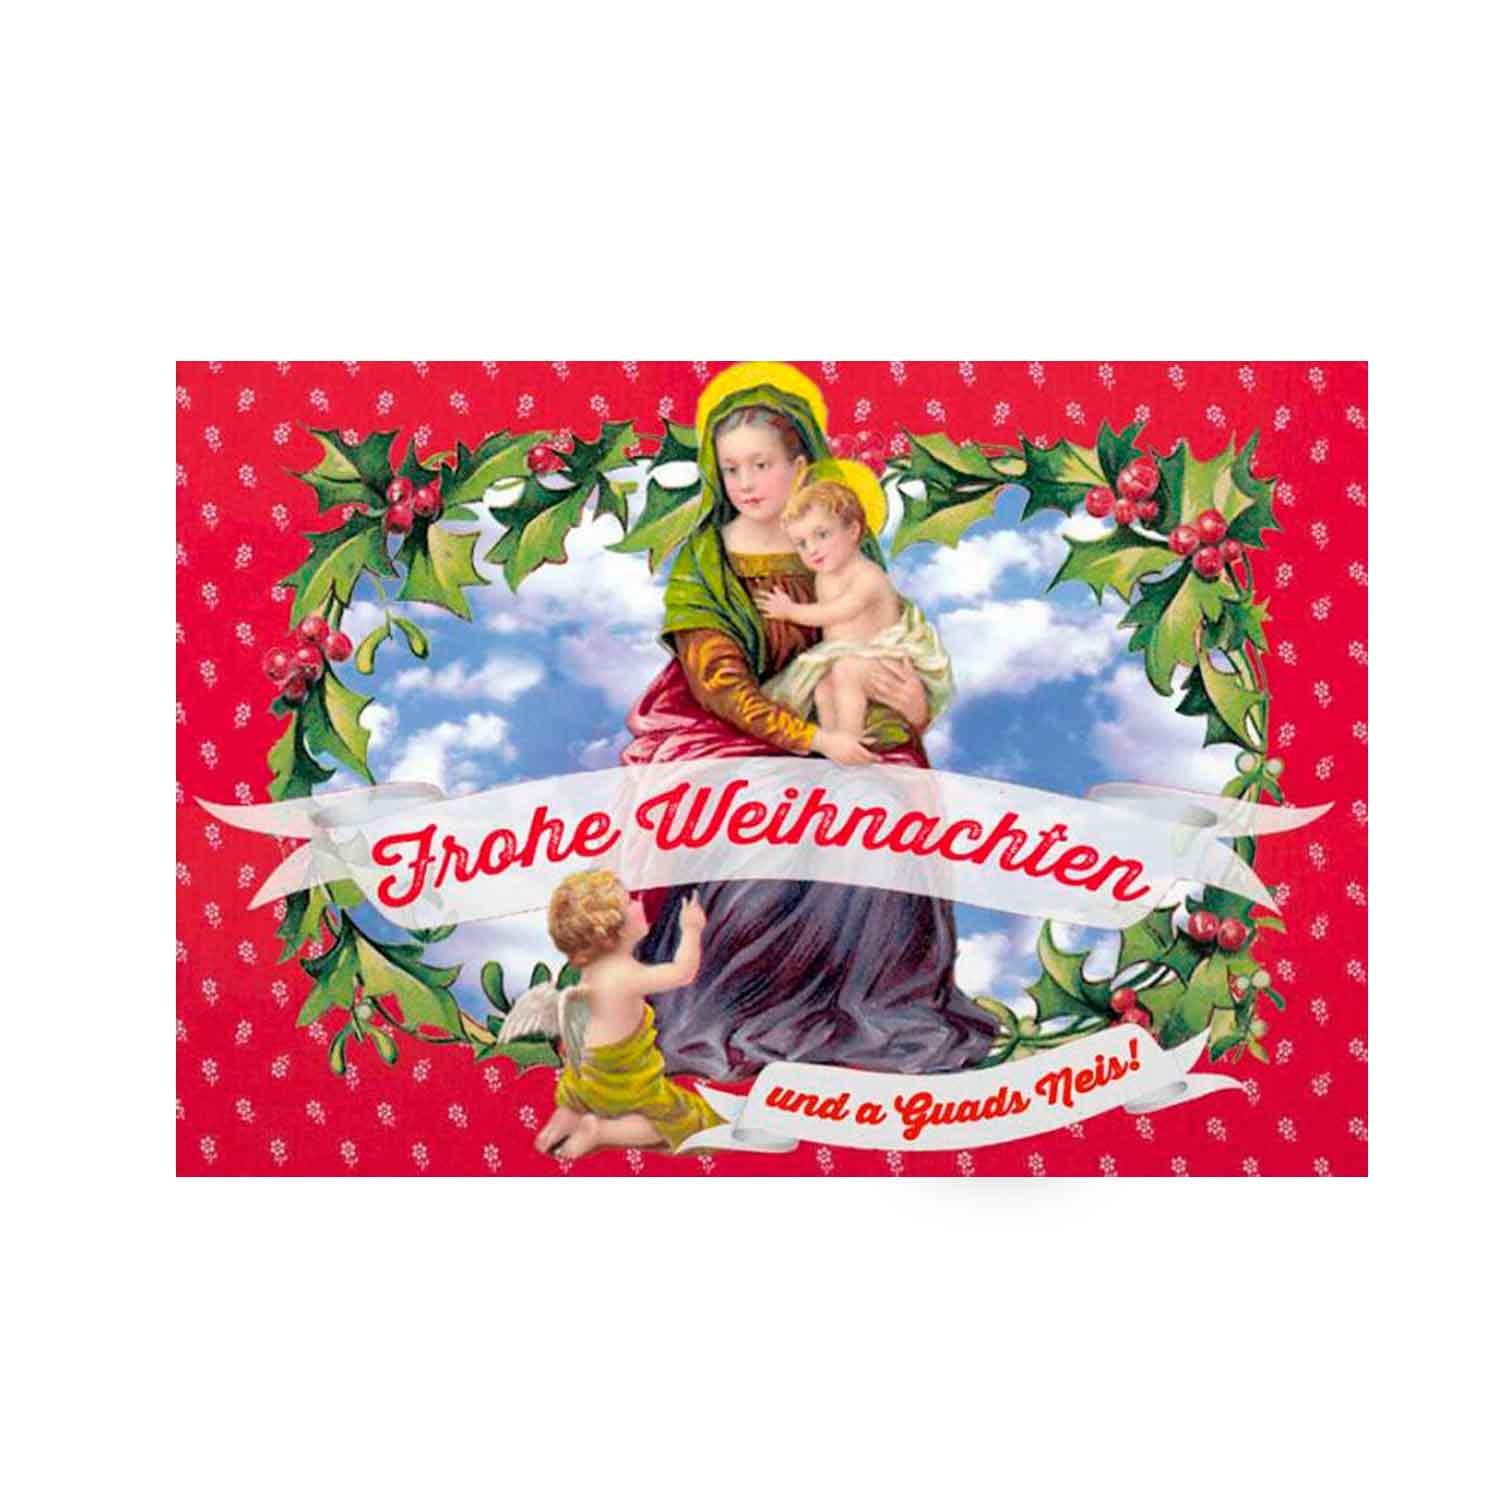 Weihnachtskarte "Maria Frohe Weihnachten" - bavariashop - mei LebensGfui